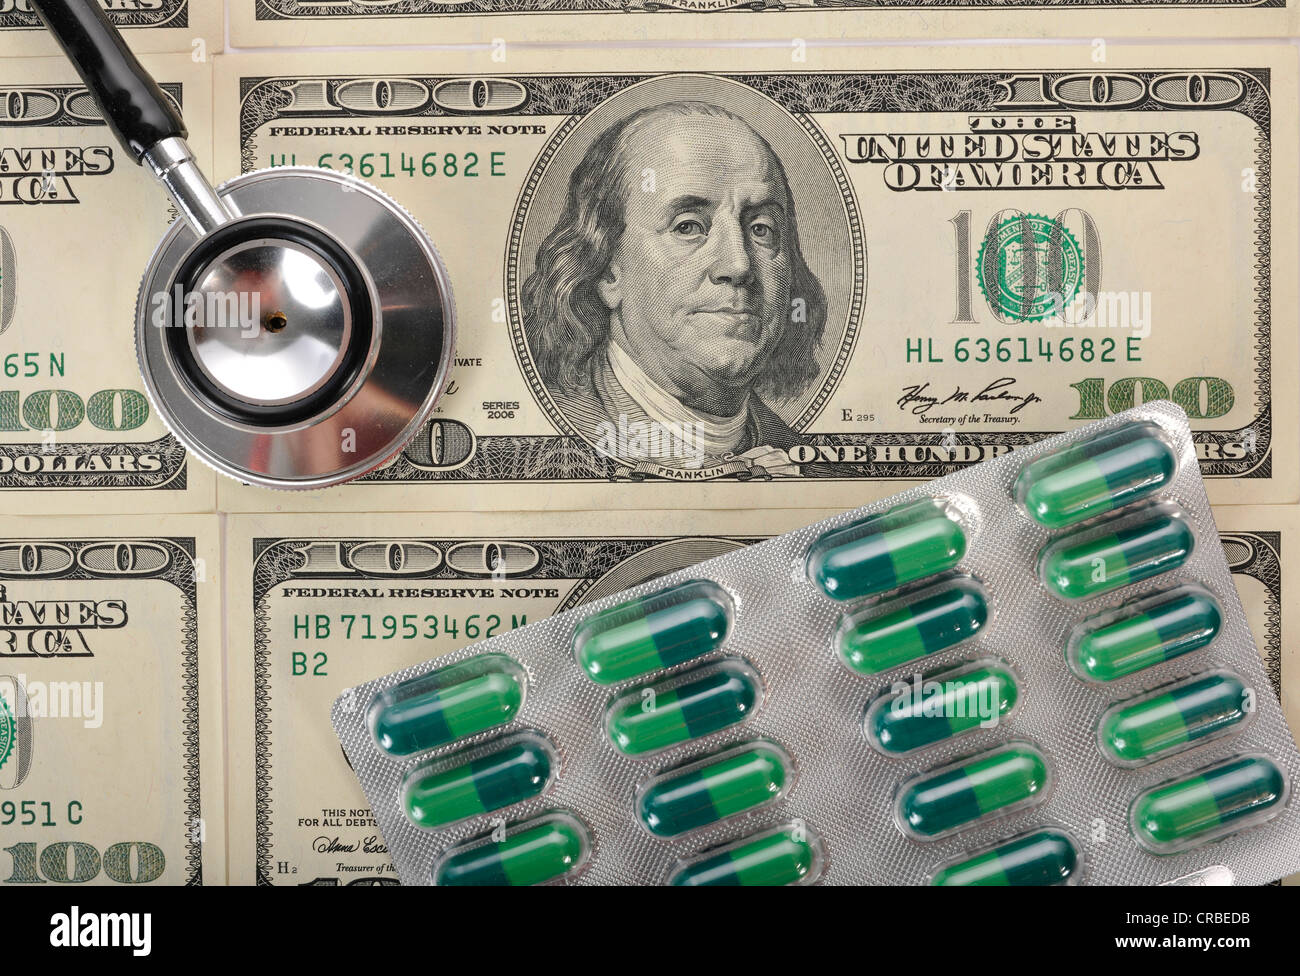 Stethoskop und Kapseln auf US-Dollar-Banknoten, symbolisches Bild einer Kranken US-Währung oder die steigenden Kosten des Gesundheitswesens Stockfoto